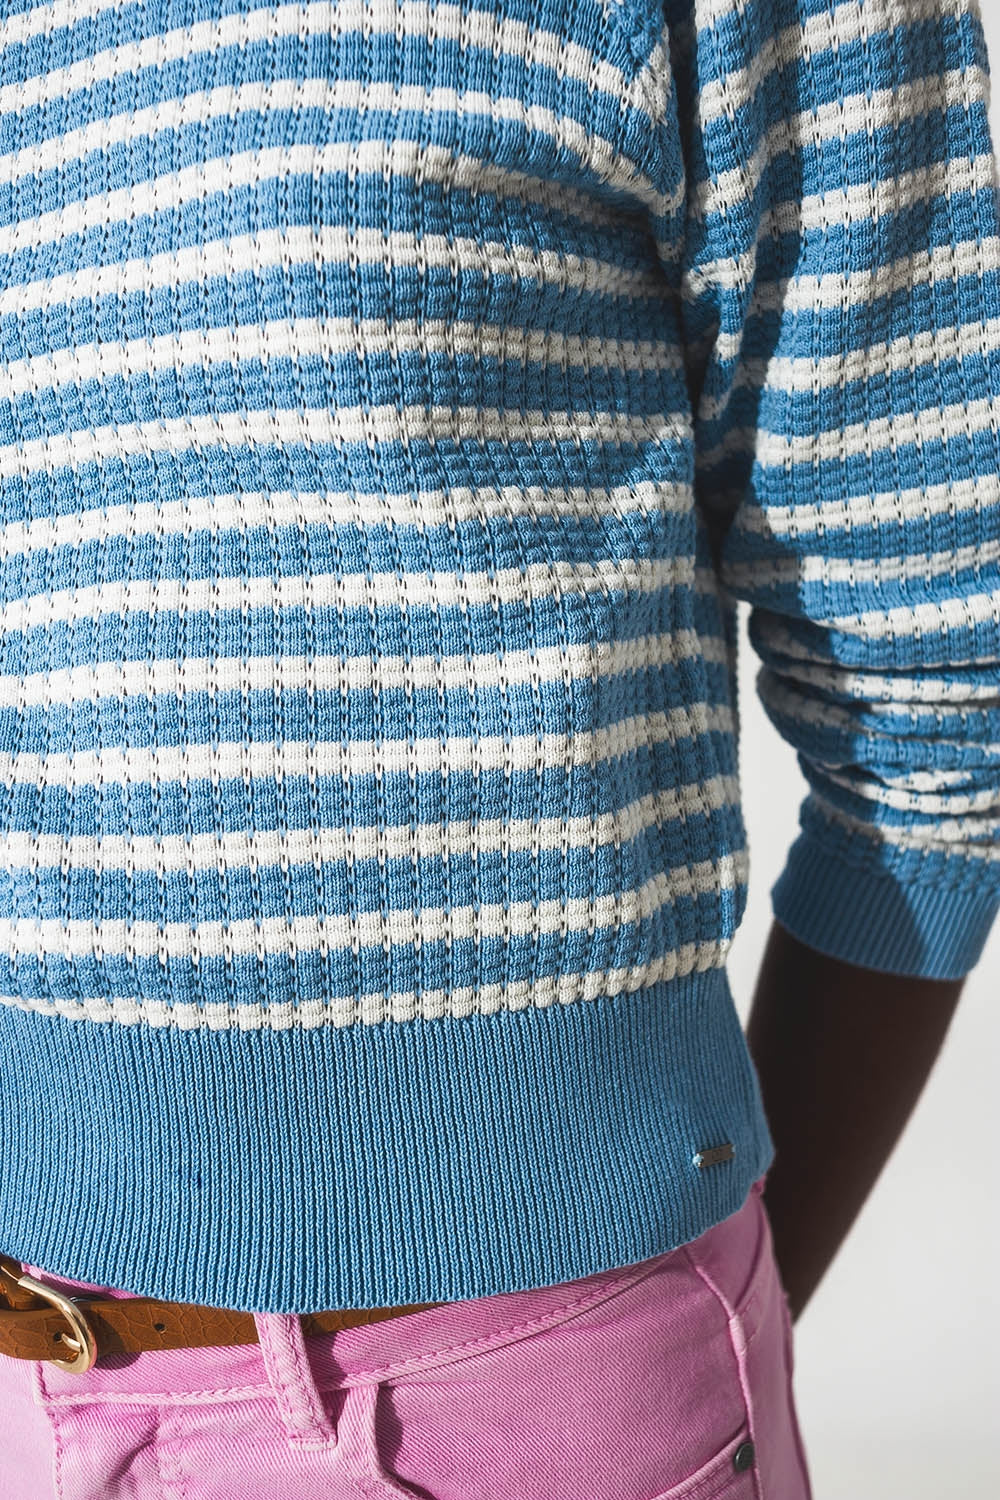 Blue striped sweater with ruffled trim - Szua Store